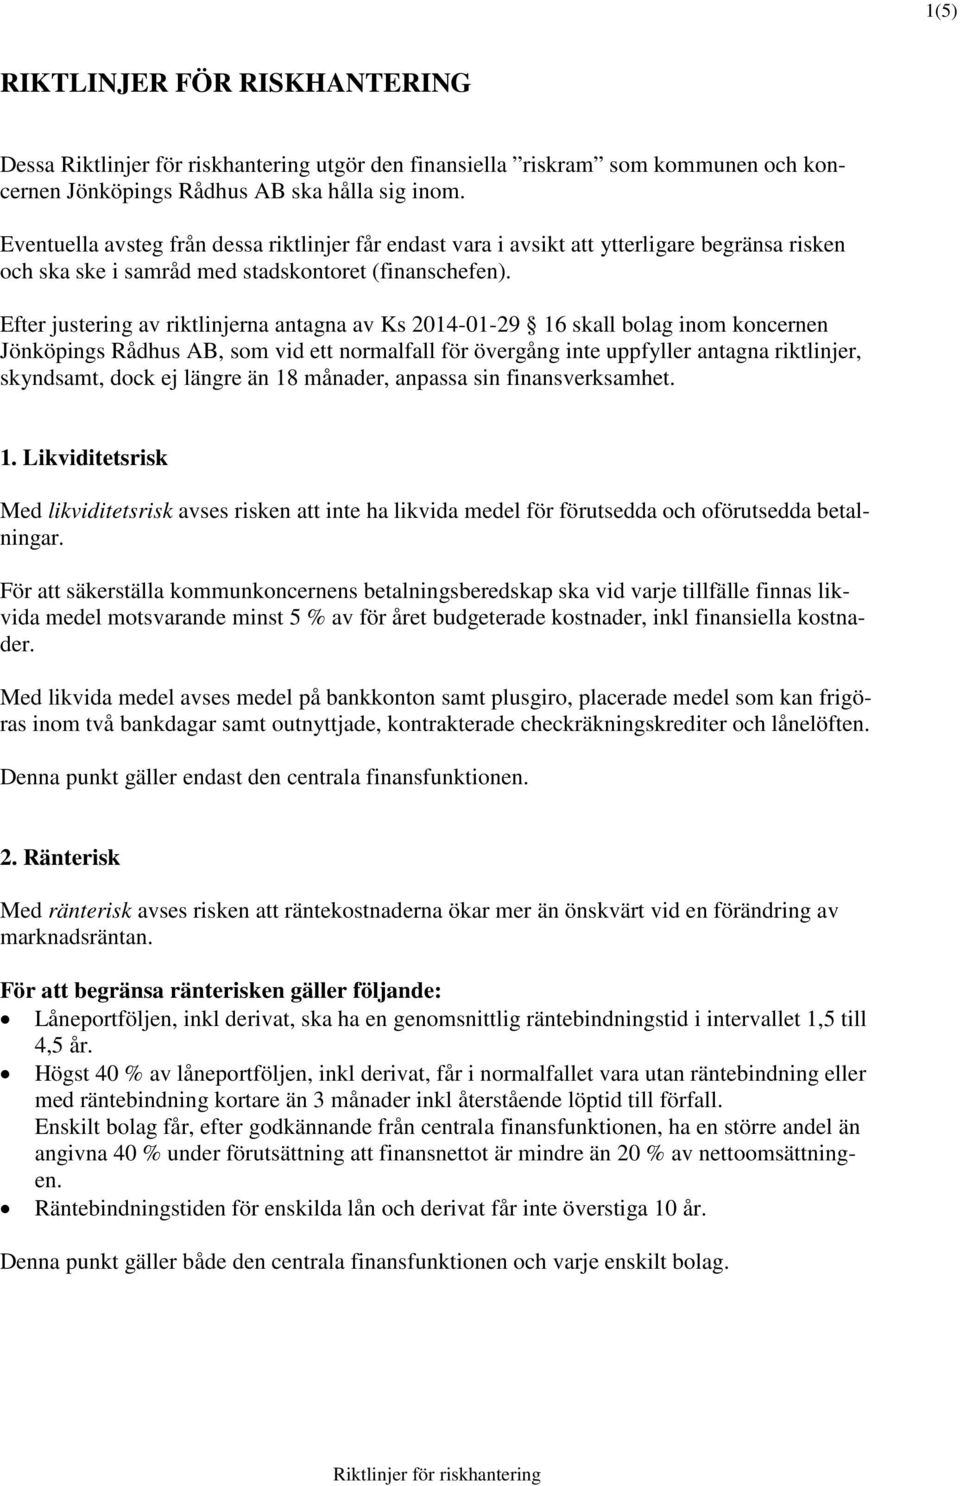 Efter justering av riktlinjerna antagna av Ks 2014-01-29 16 skall bolag inom koncernen Jönköpings Rådhus AB, som vid ett normalfall för övergång inte uppfyller antagna riktlinjer, skyndsamt, dock ej